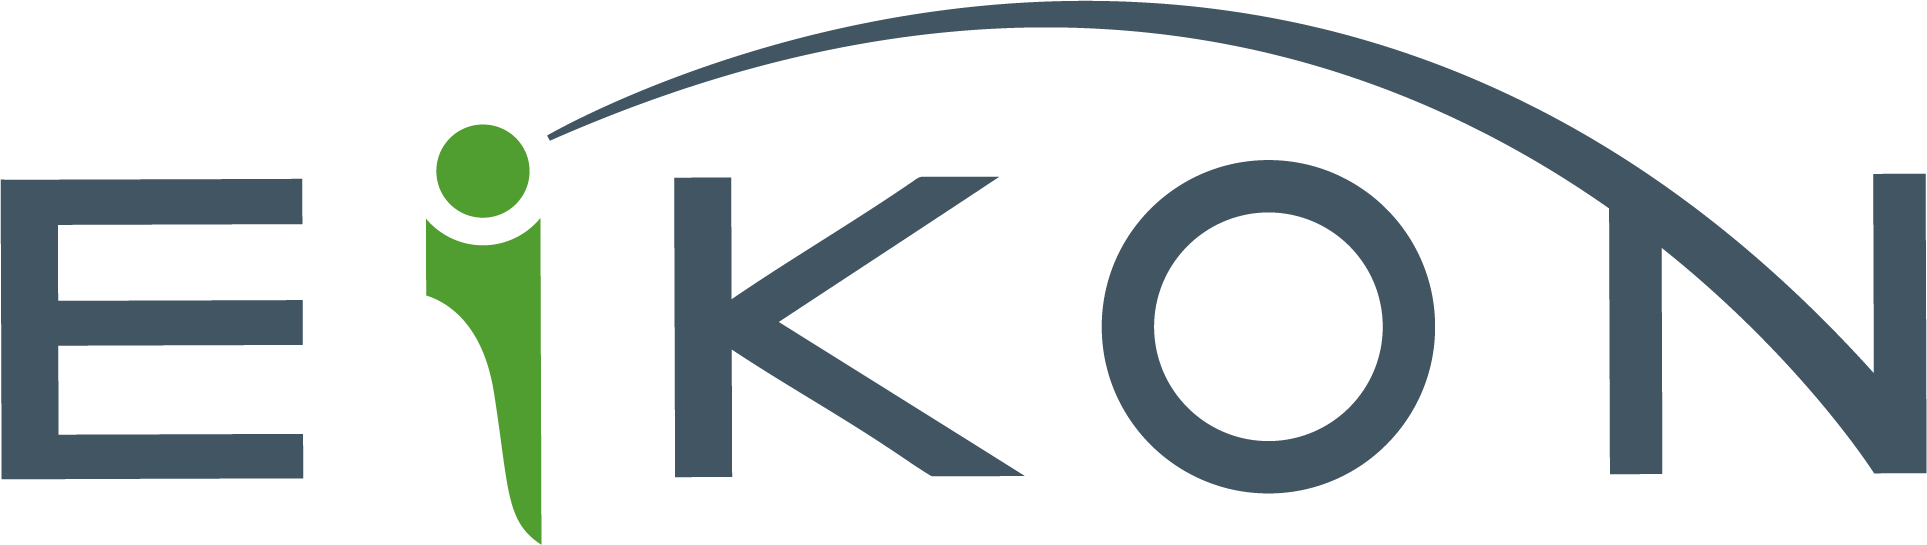 EIKON Consulting Group Logo